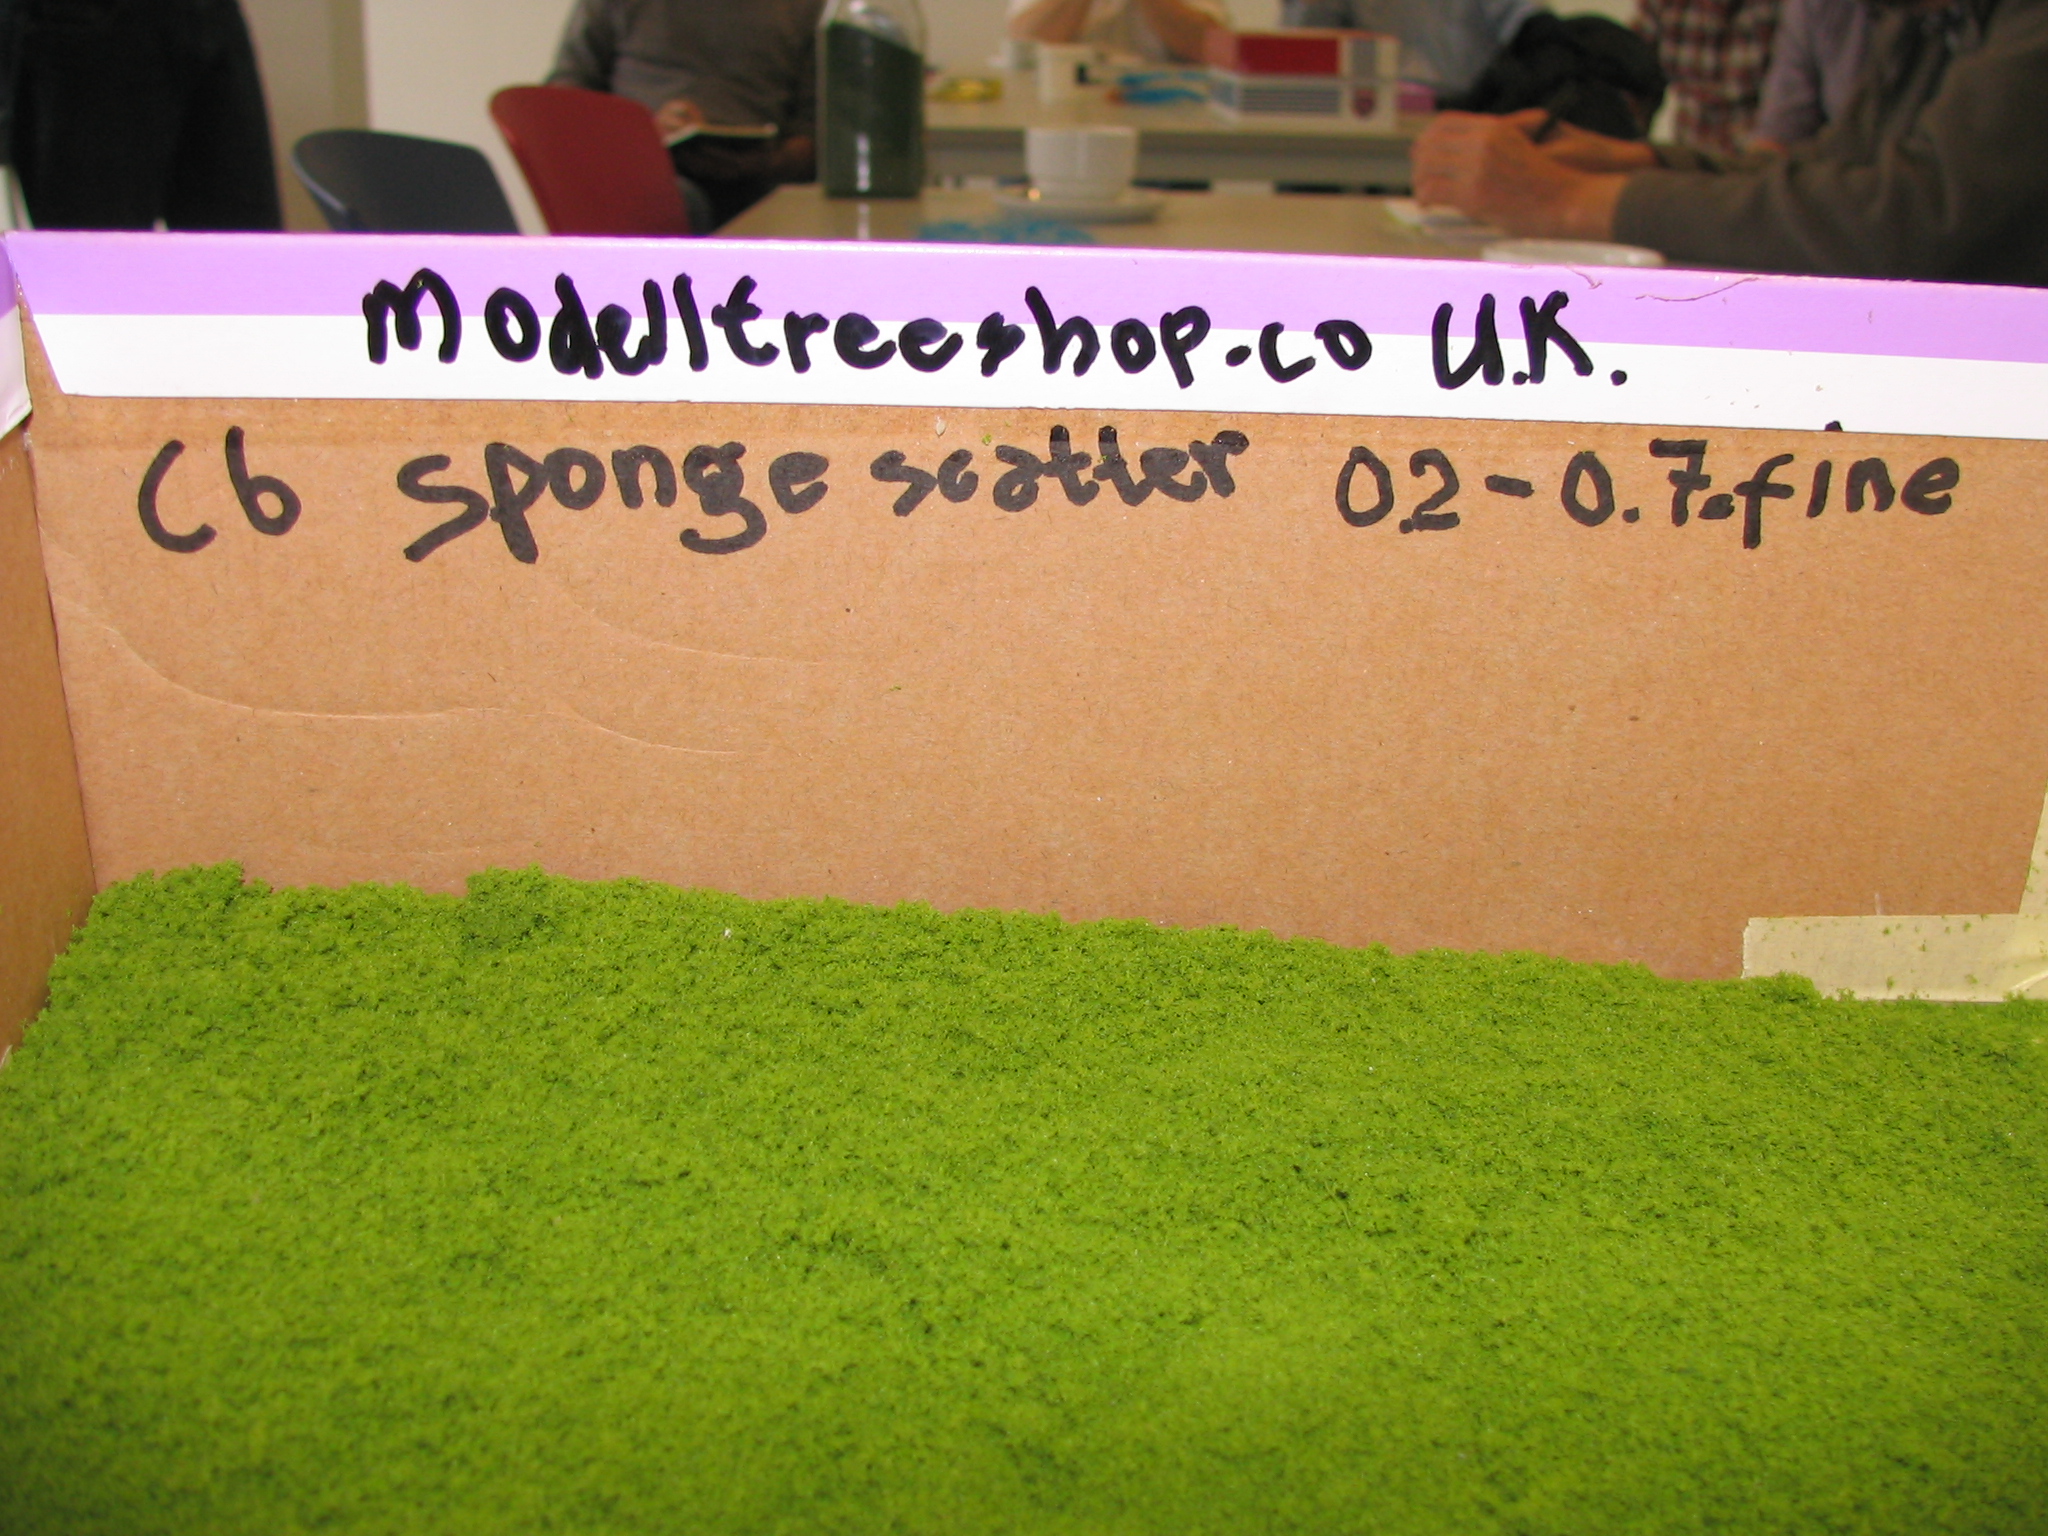 Modeltreeshop sponge seatter